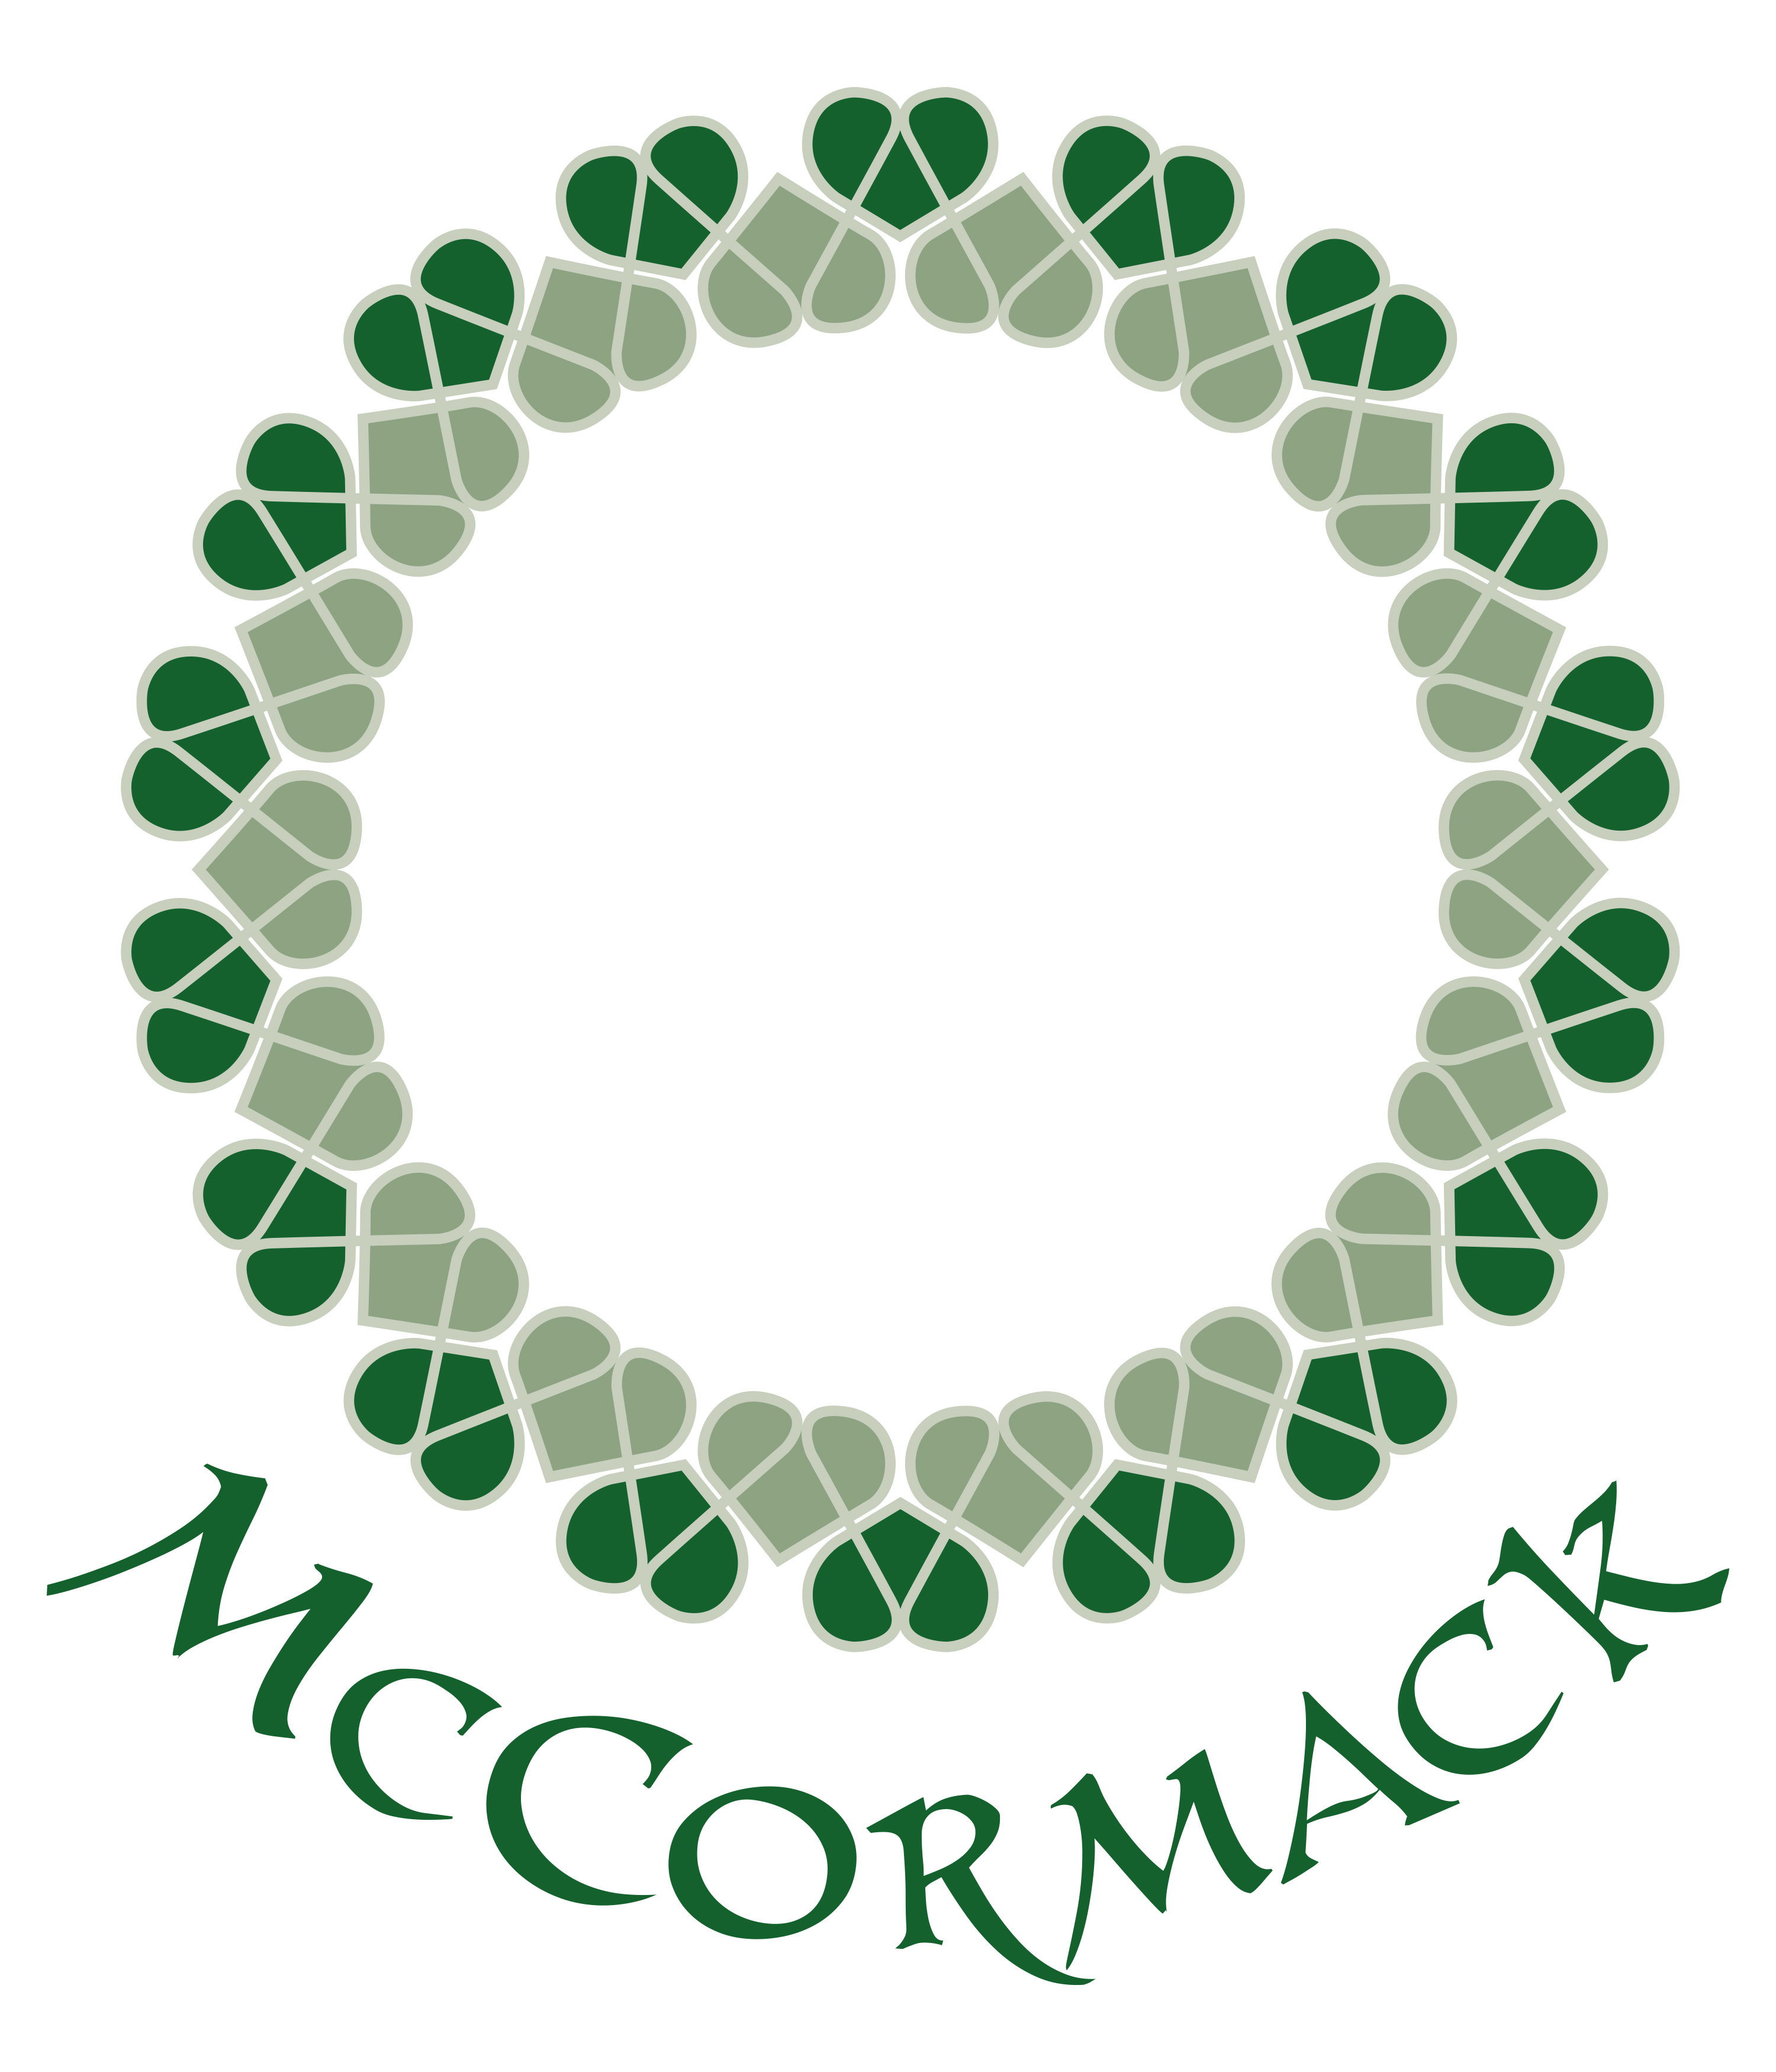 McCormack+name.jpg